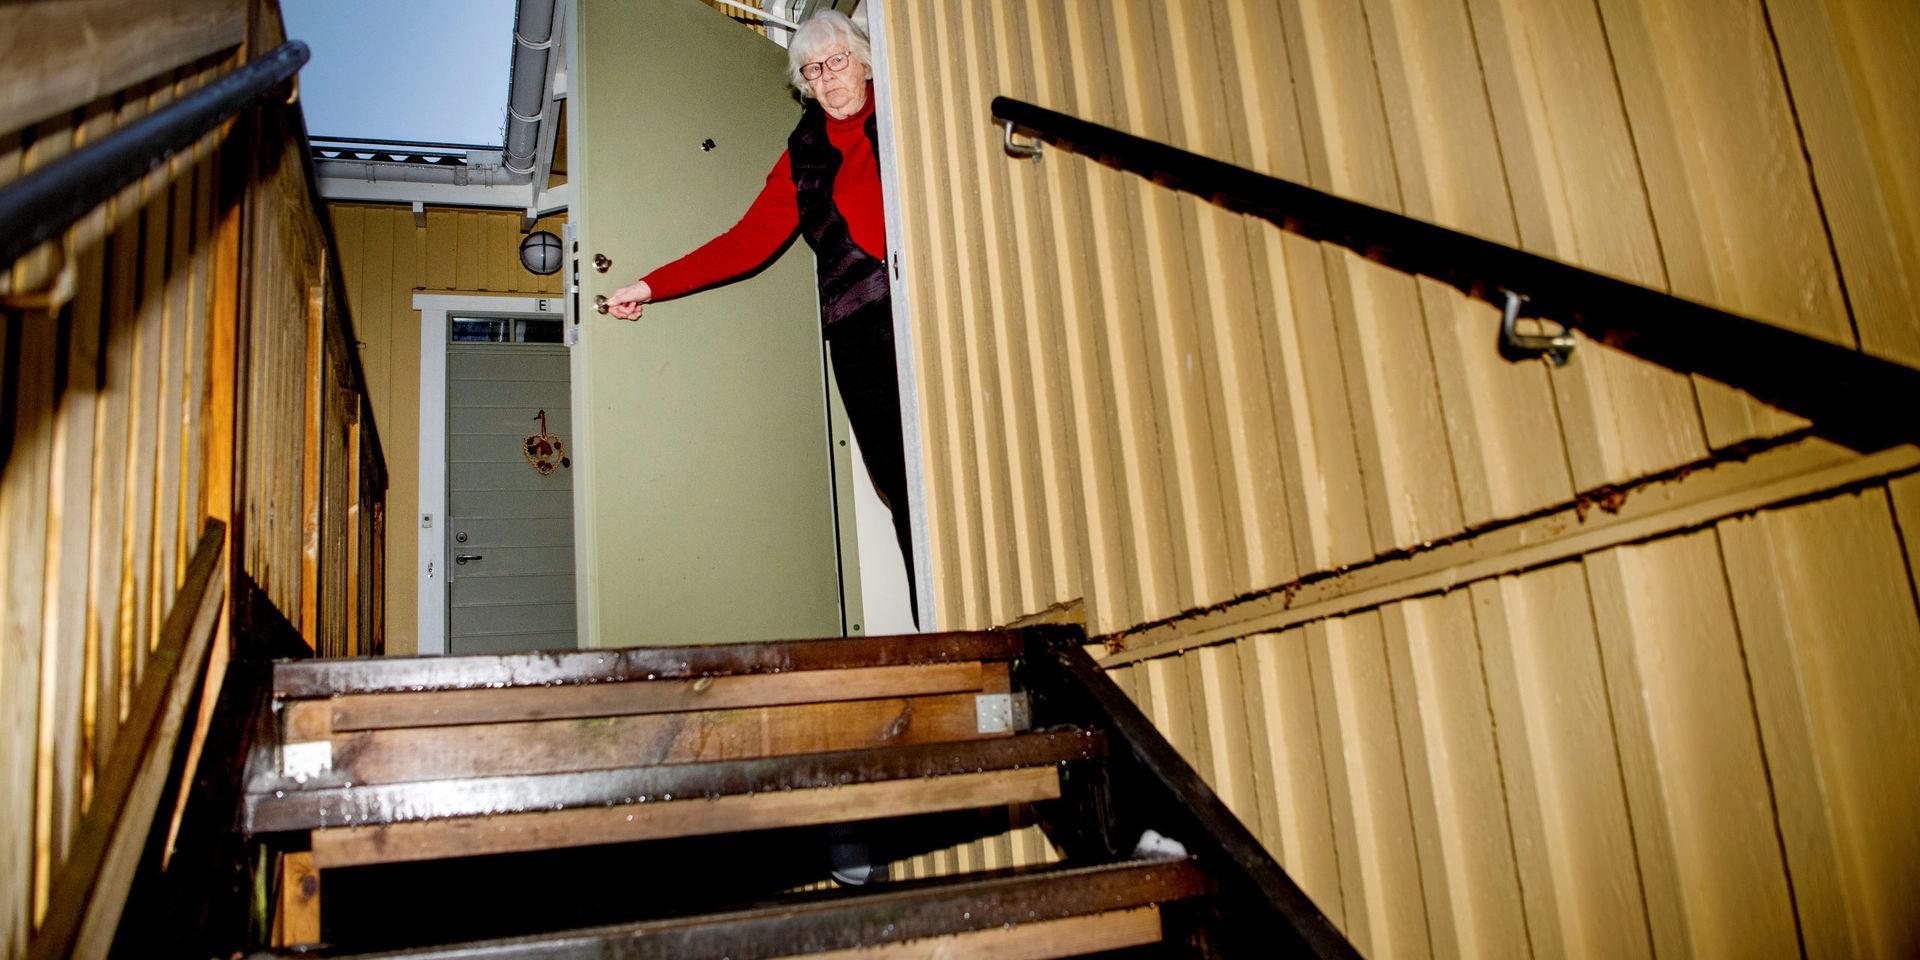 Ulla Meijel bor en trappa upp där det saknas hiss, så hon befarar att hon längre fram behöver en lägenhet i markplan. Chansen att få en sådan genom HFAB:s kö har plötsligt minskat markant eftersom hon precis blivit av med 13 års köpoäng.